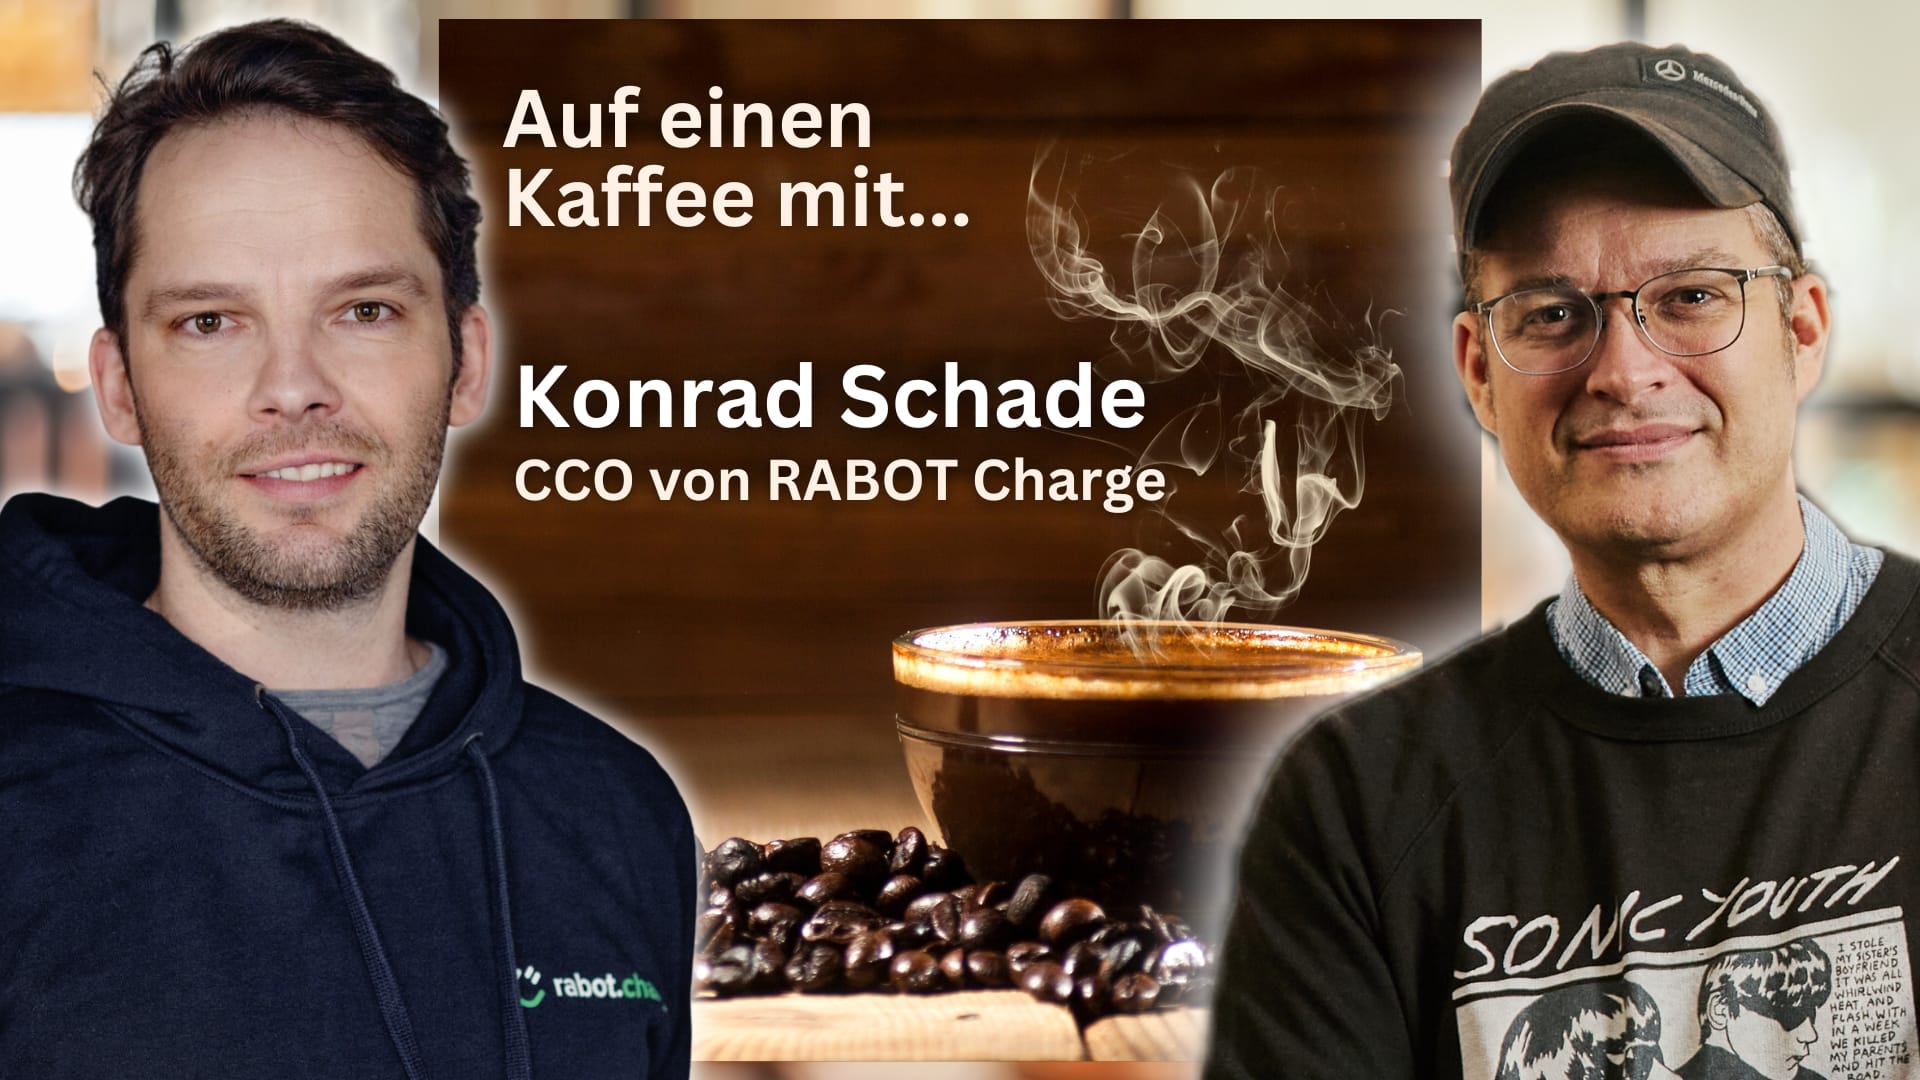 Auf einen Kaffee mit Konrad Schade von RABOT Charge